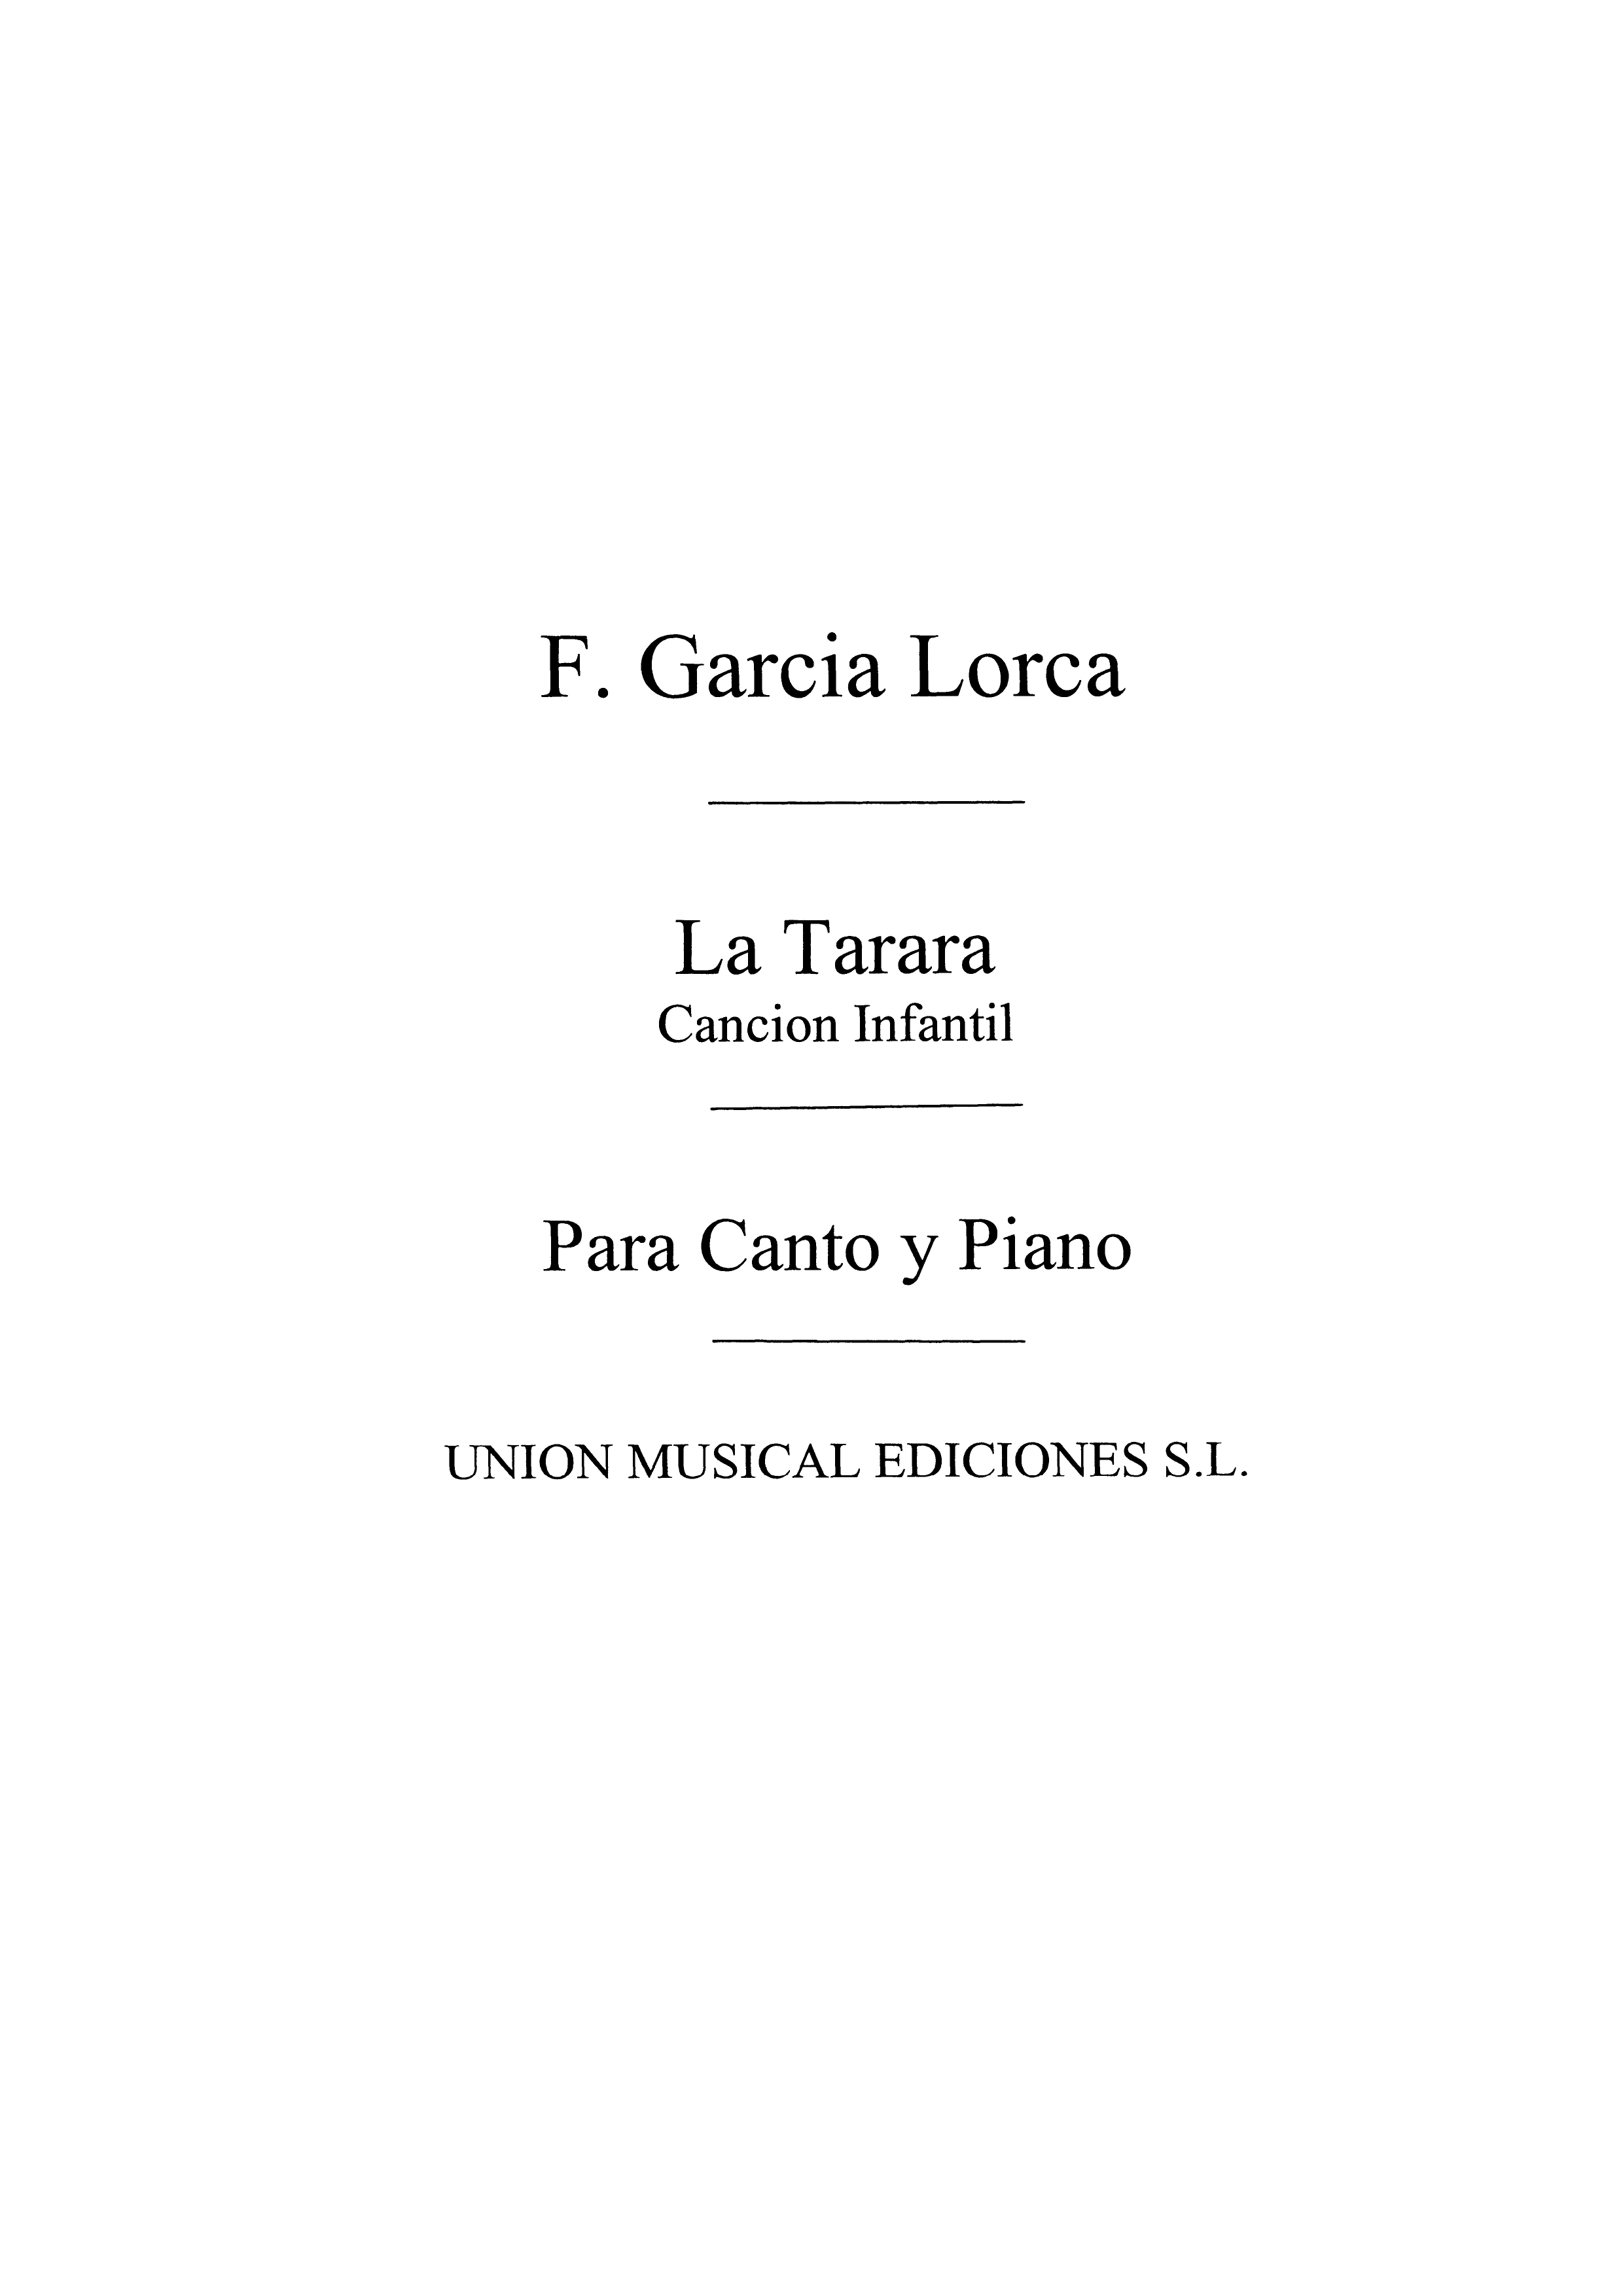 Federico Garcia Lorca: Federico Garcia Lorca: La Tarara  Cancion Infantil: